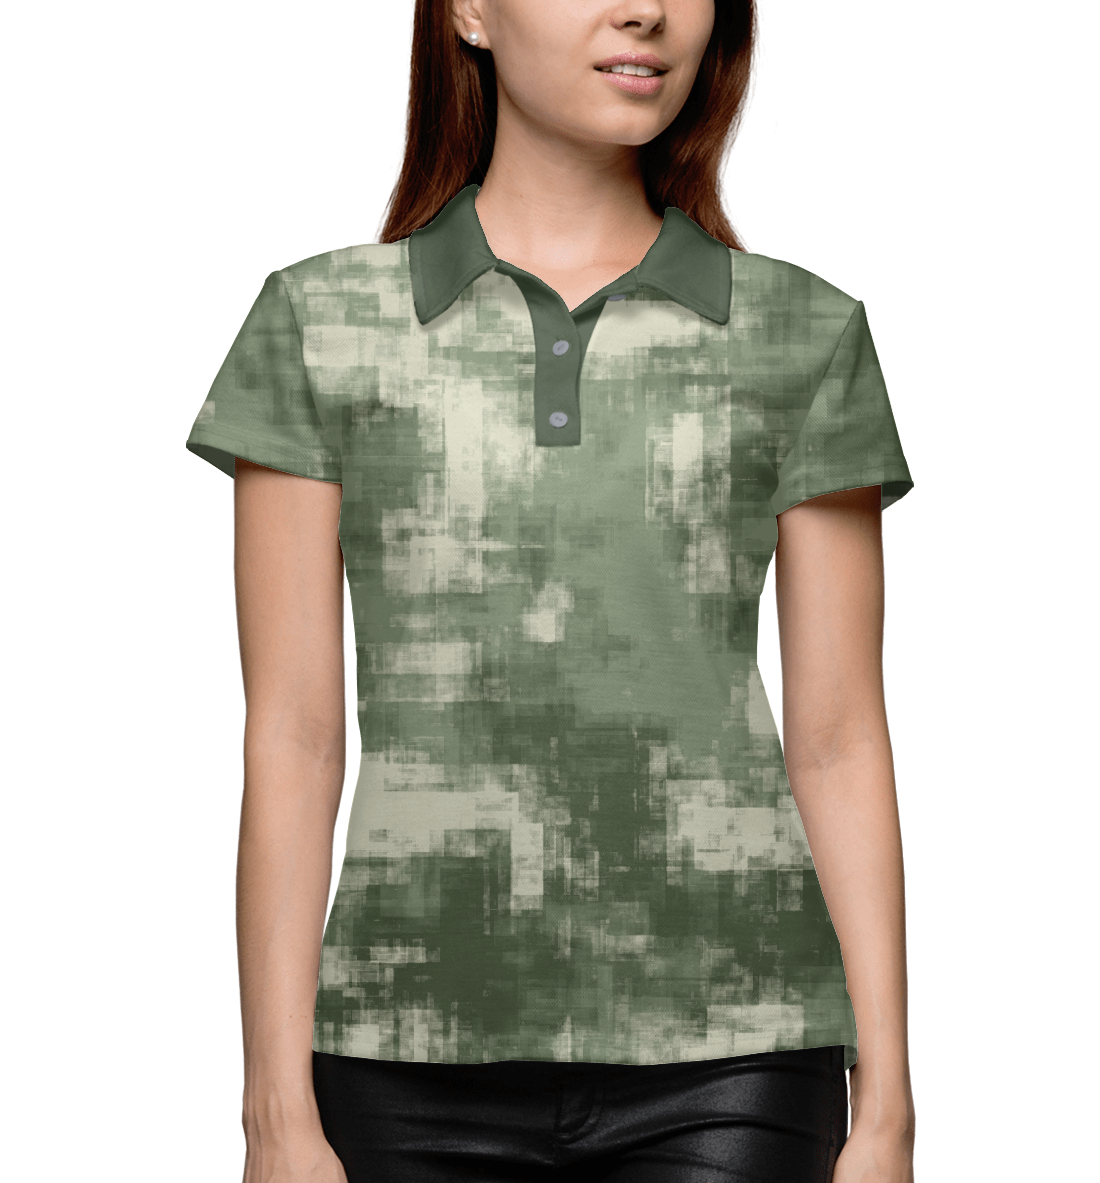 Женское Поло Военный камуфляж- одежда для мужчин и женщин, артикул CMF-442561-pol-1mp